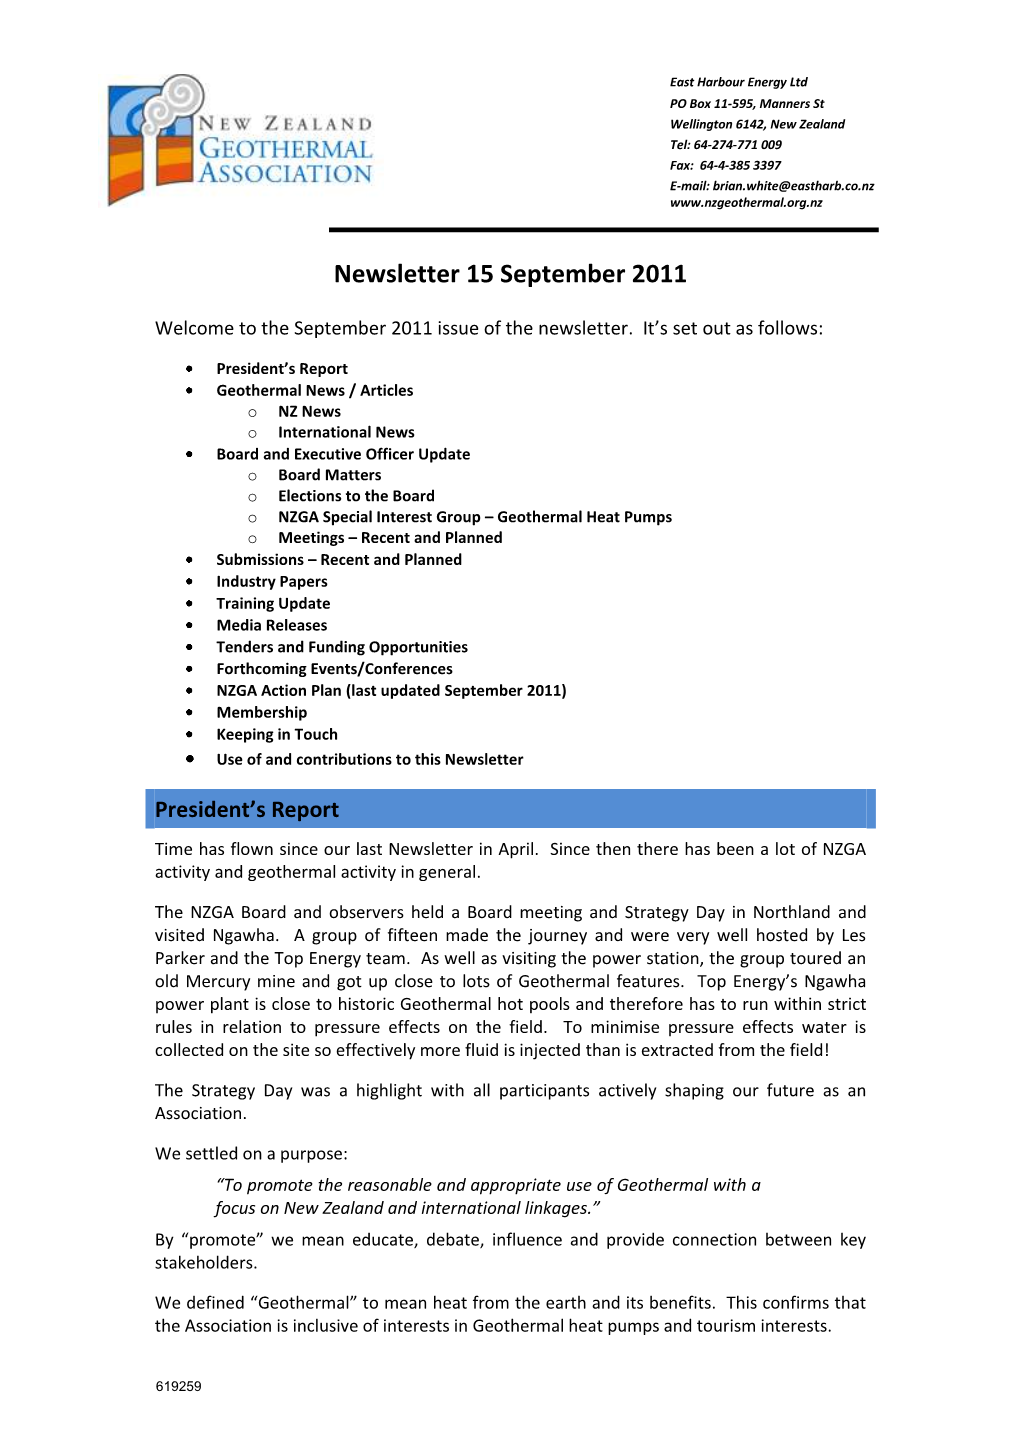 NZGA Treasurers Report